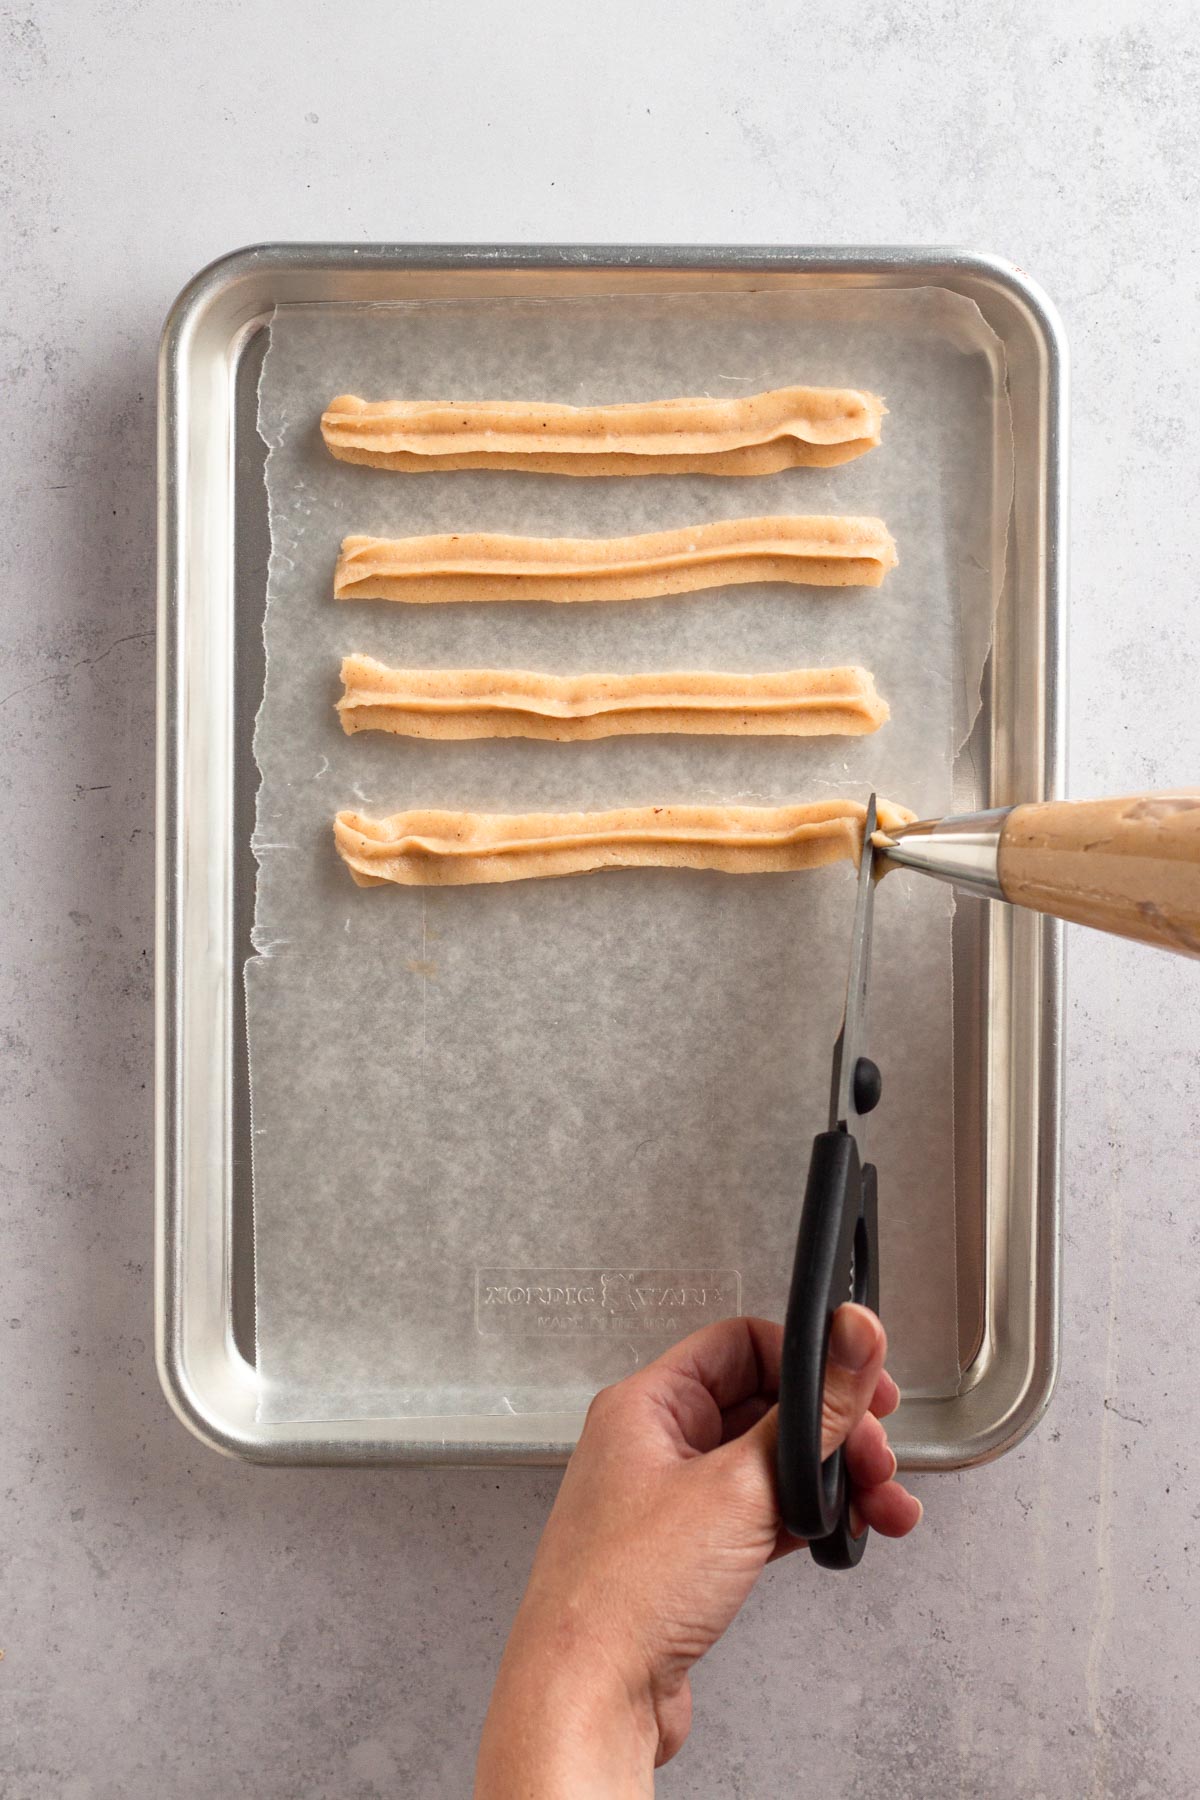 Piping churro dough onto a baking sheet to freeze before frying.